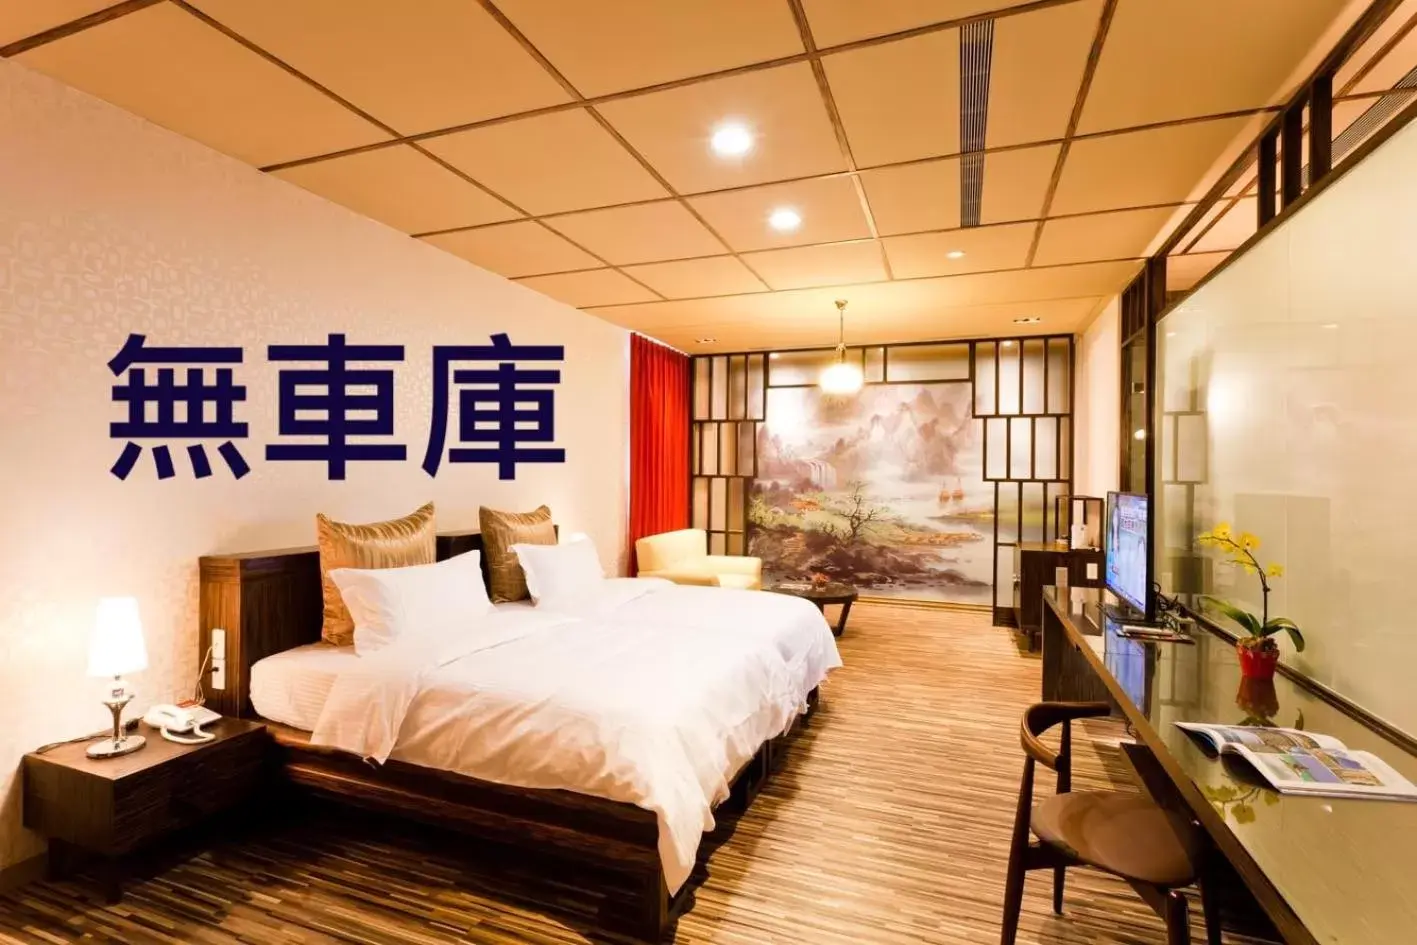 Standard Double Room in Tian Xia Ju Motel